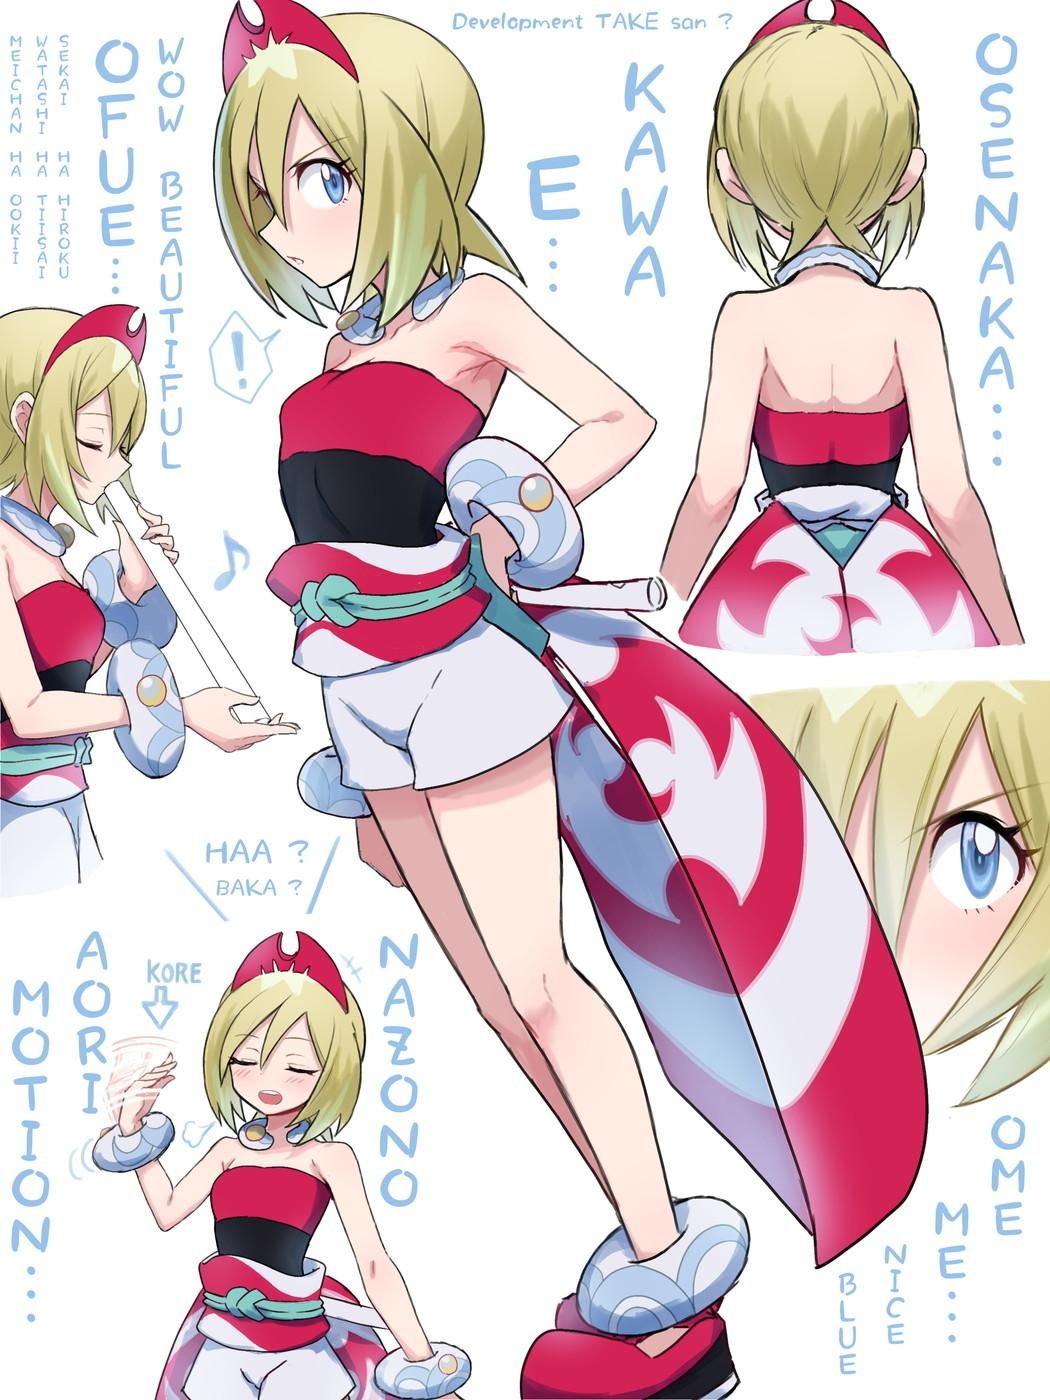 【Pokemon】Shinju Dan's Kai's erotic &amp; moe image ☆ 20